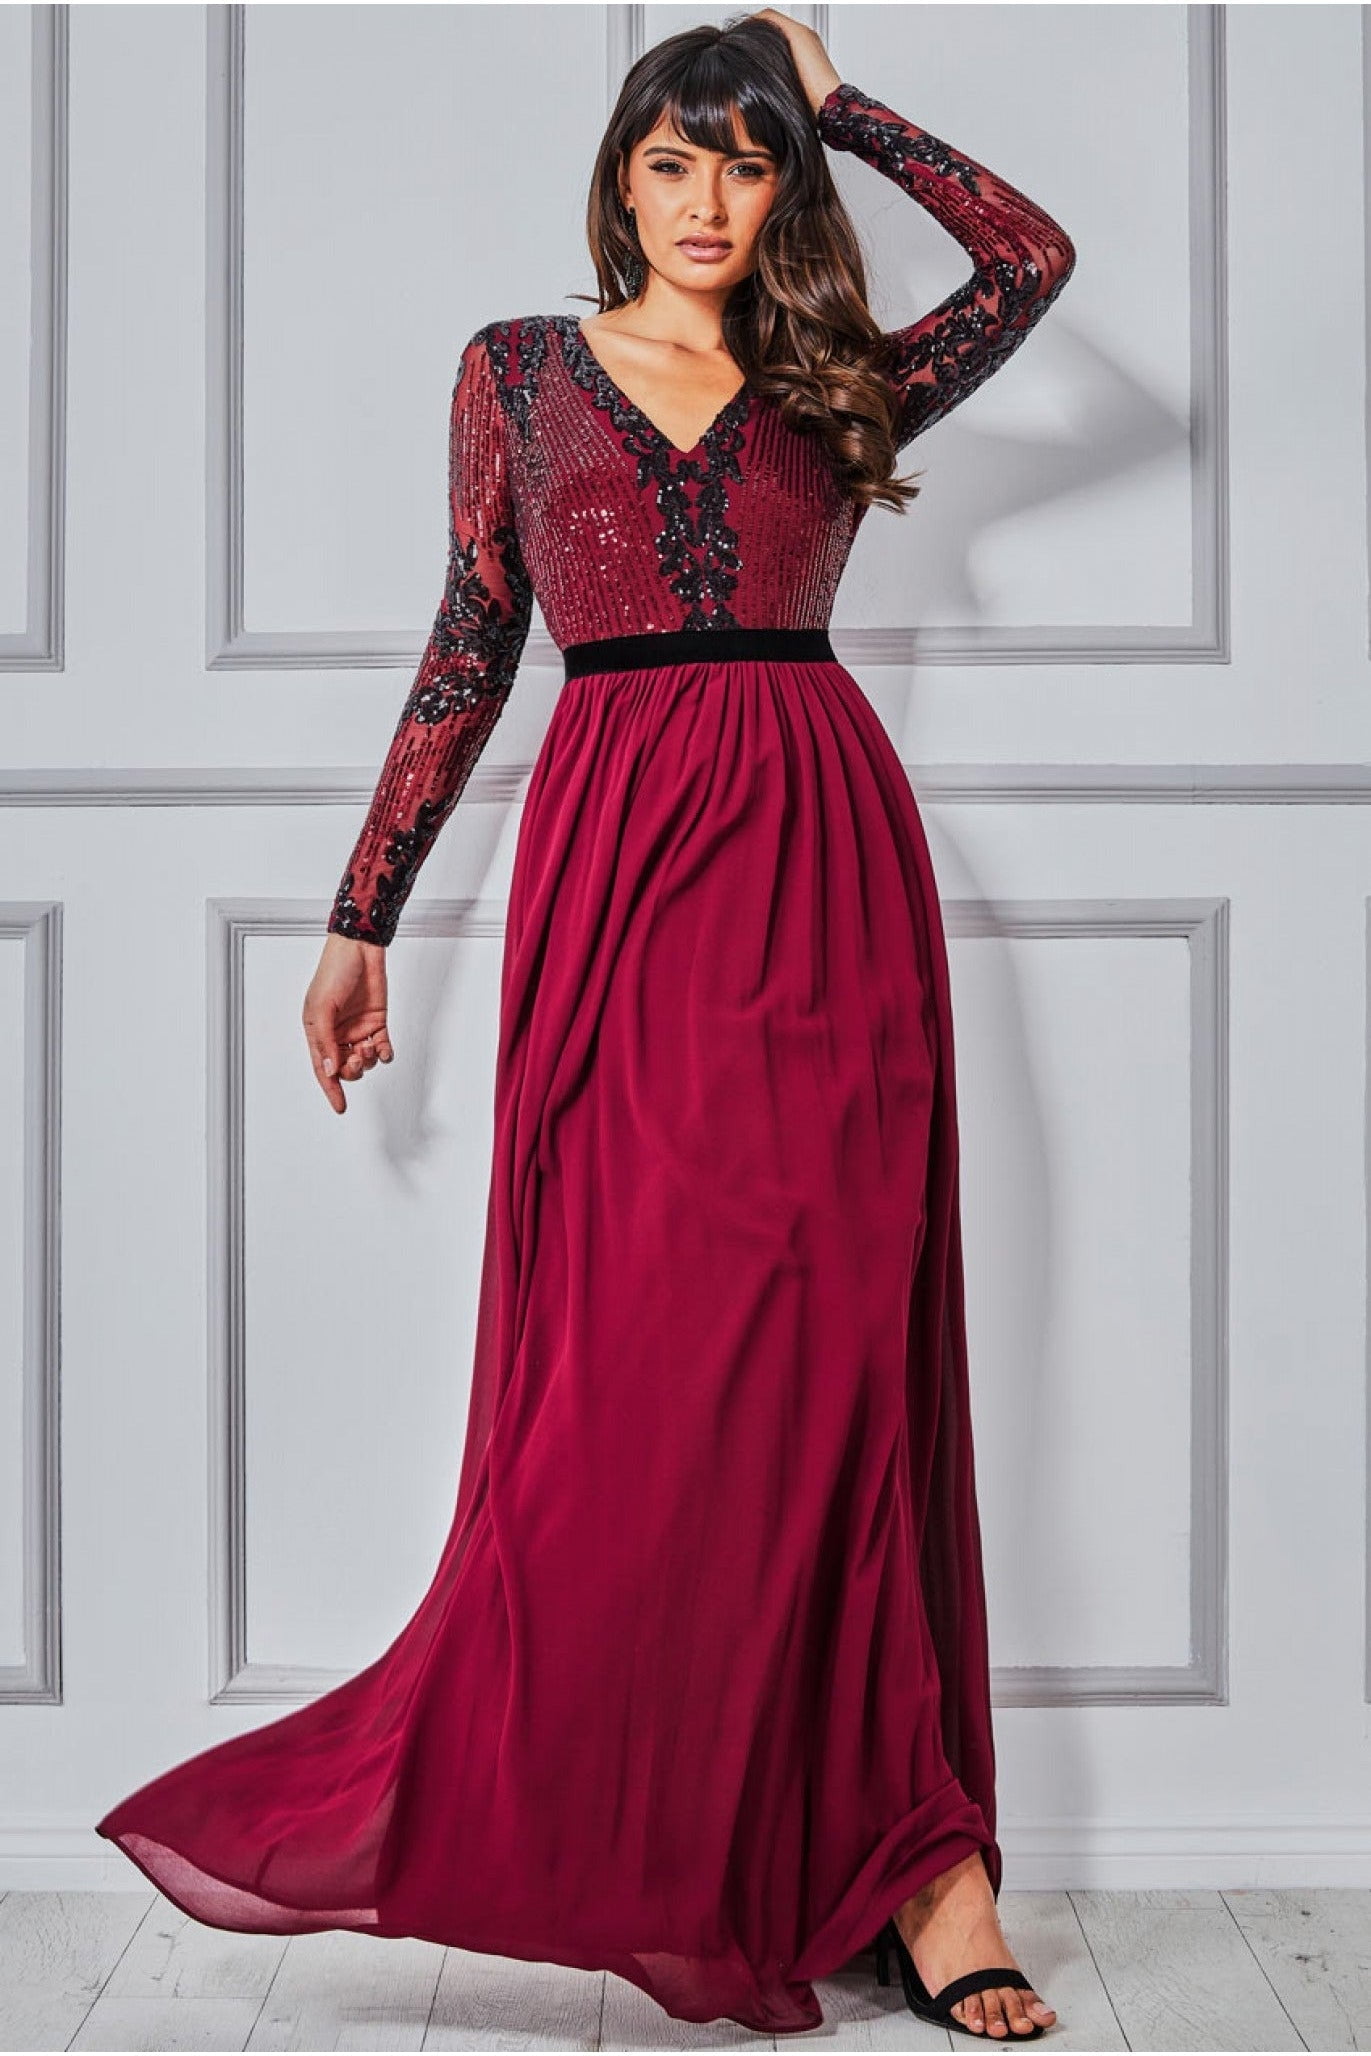 Glittering neckline velvet dress, Bardot